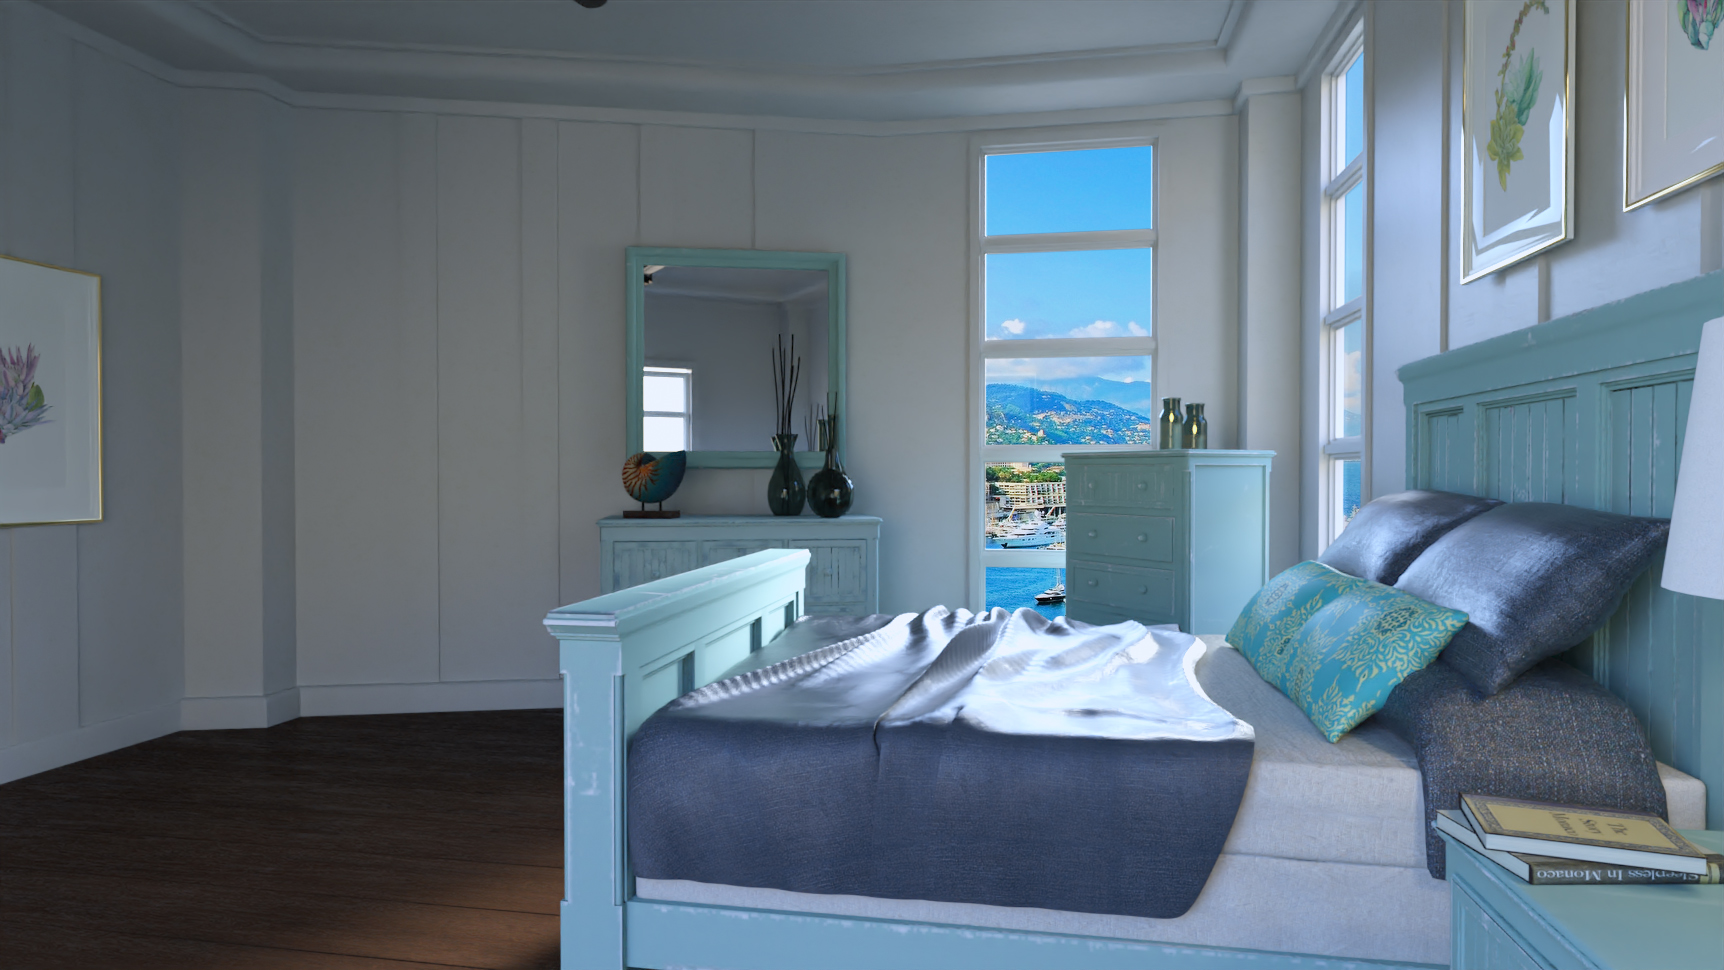 Monaco Bedroom by: , 3D Models by Daz 3D